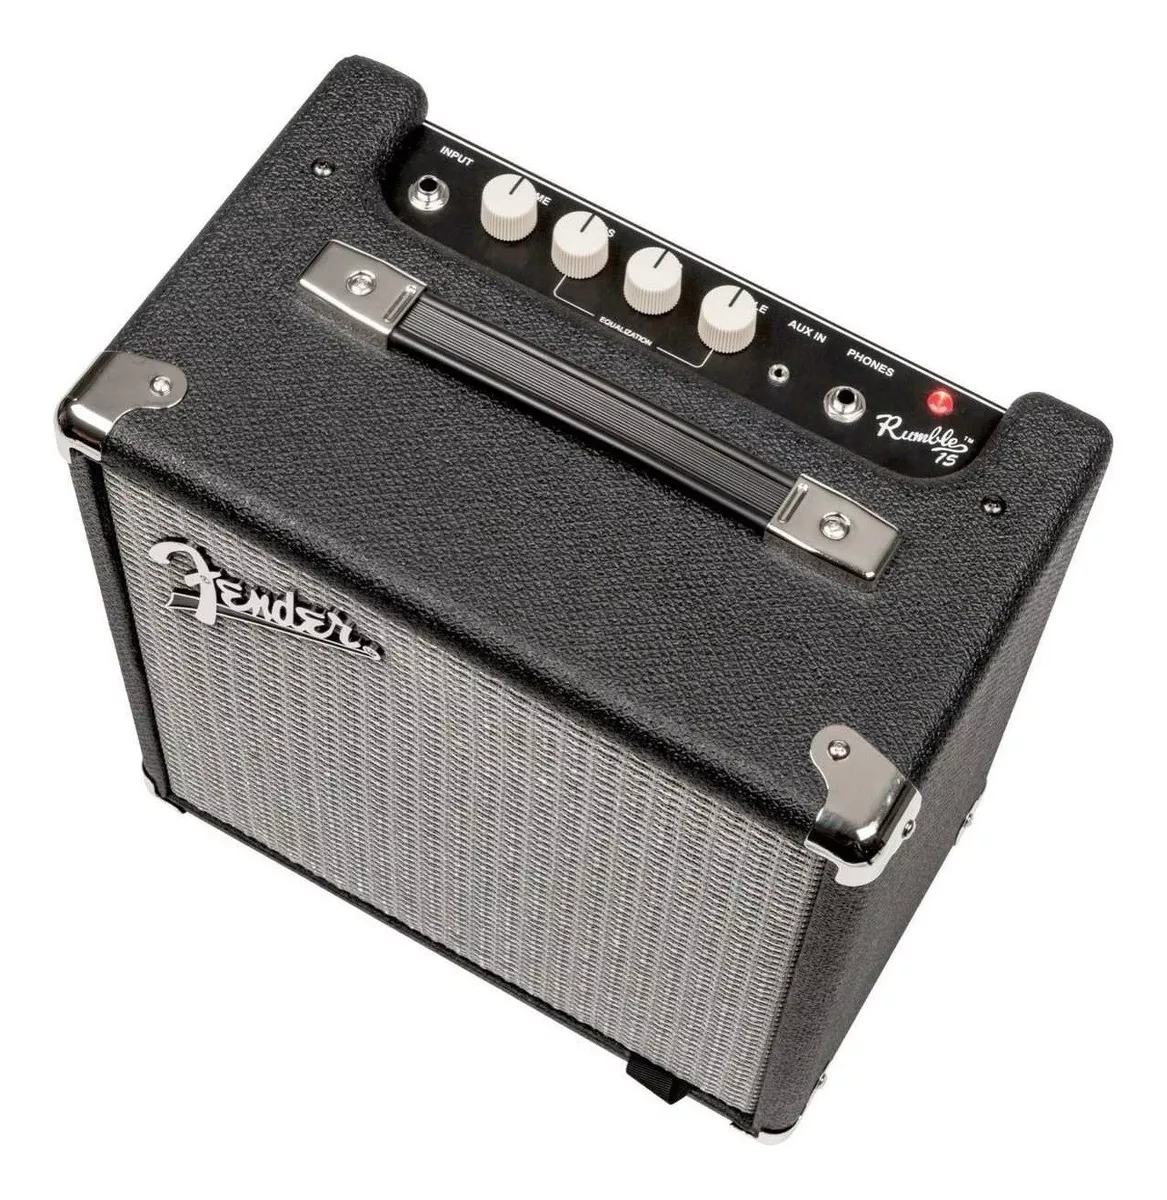 Amplificador Fender Rumble Series 15 Transistor Para Bajo De 15w Color Negro/plata 220v